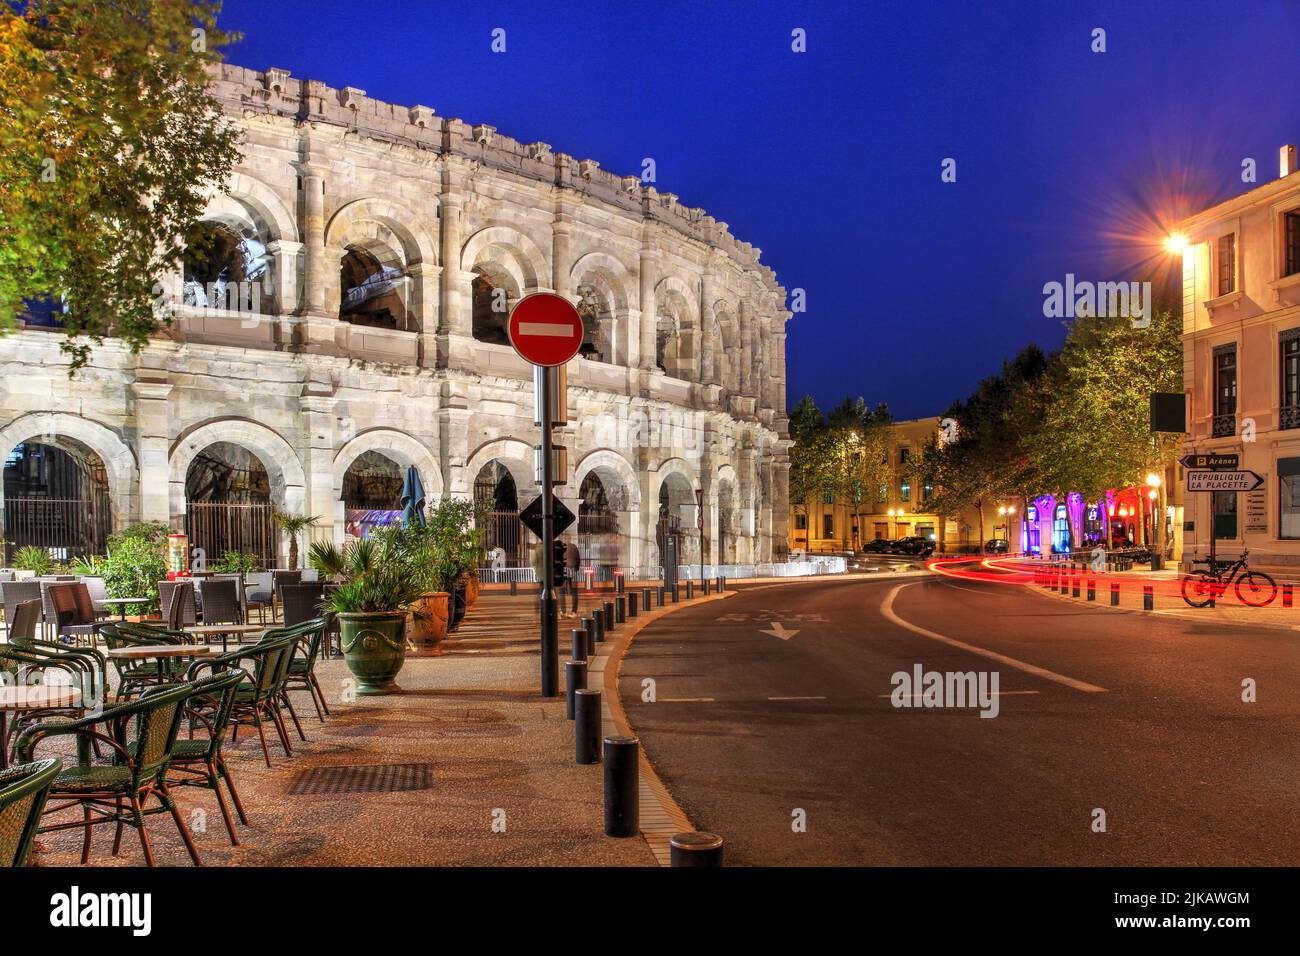 Nacht in Nîmes, Frankreich mit der wunderschönen römischen Arena, die über dem Bd des Arènes thront. Stockfoto